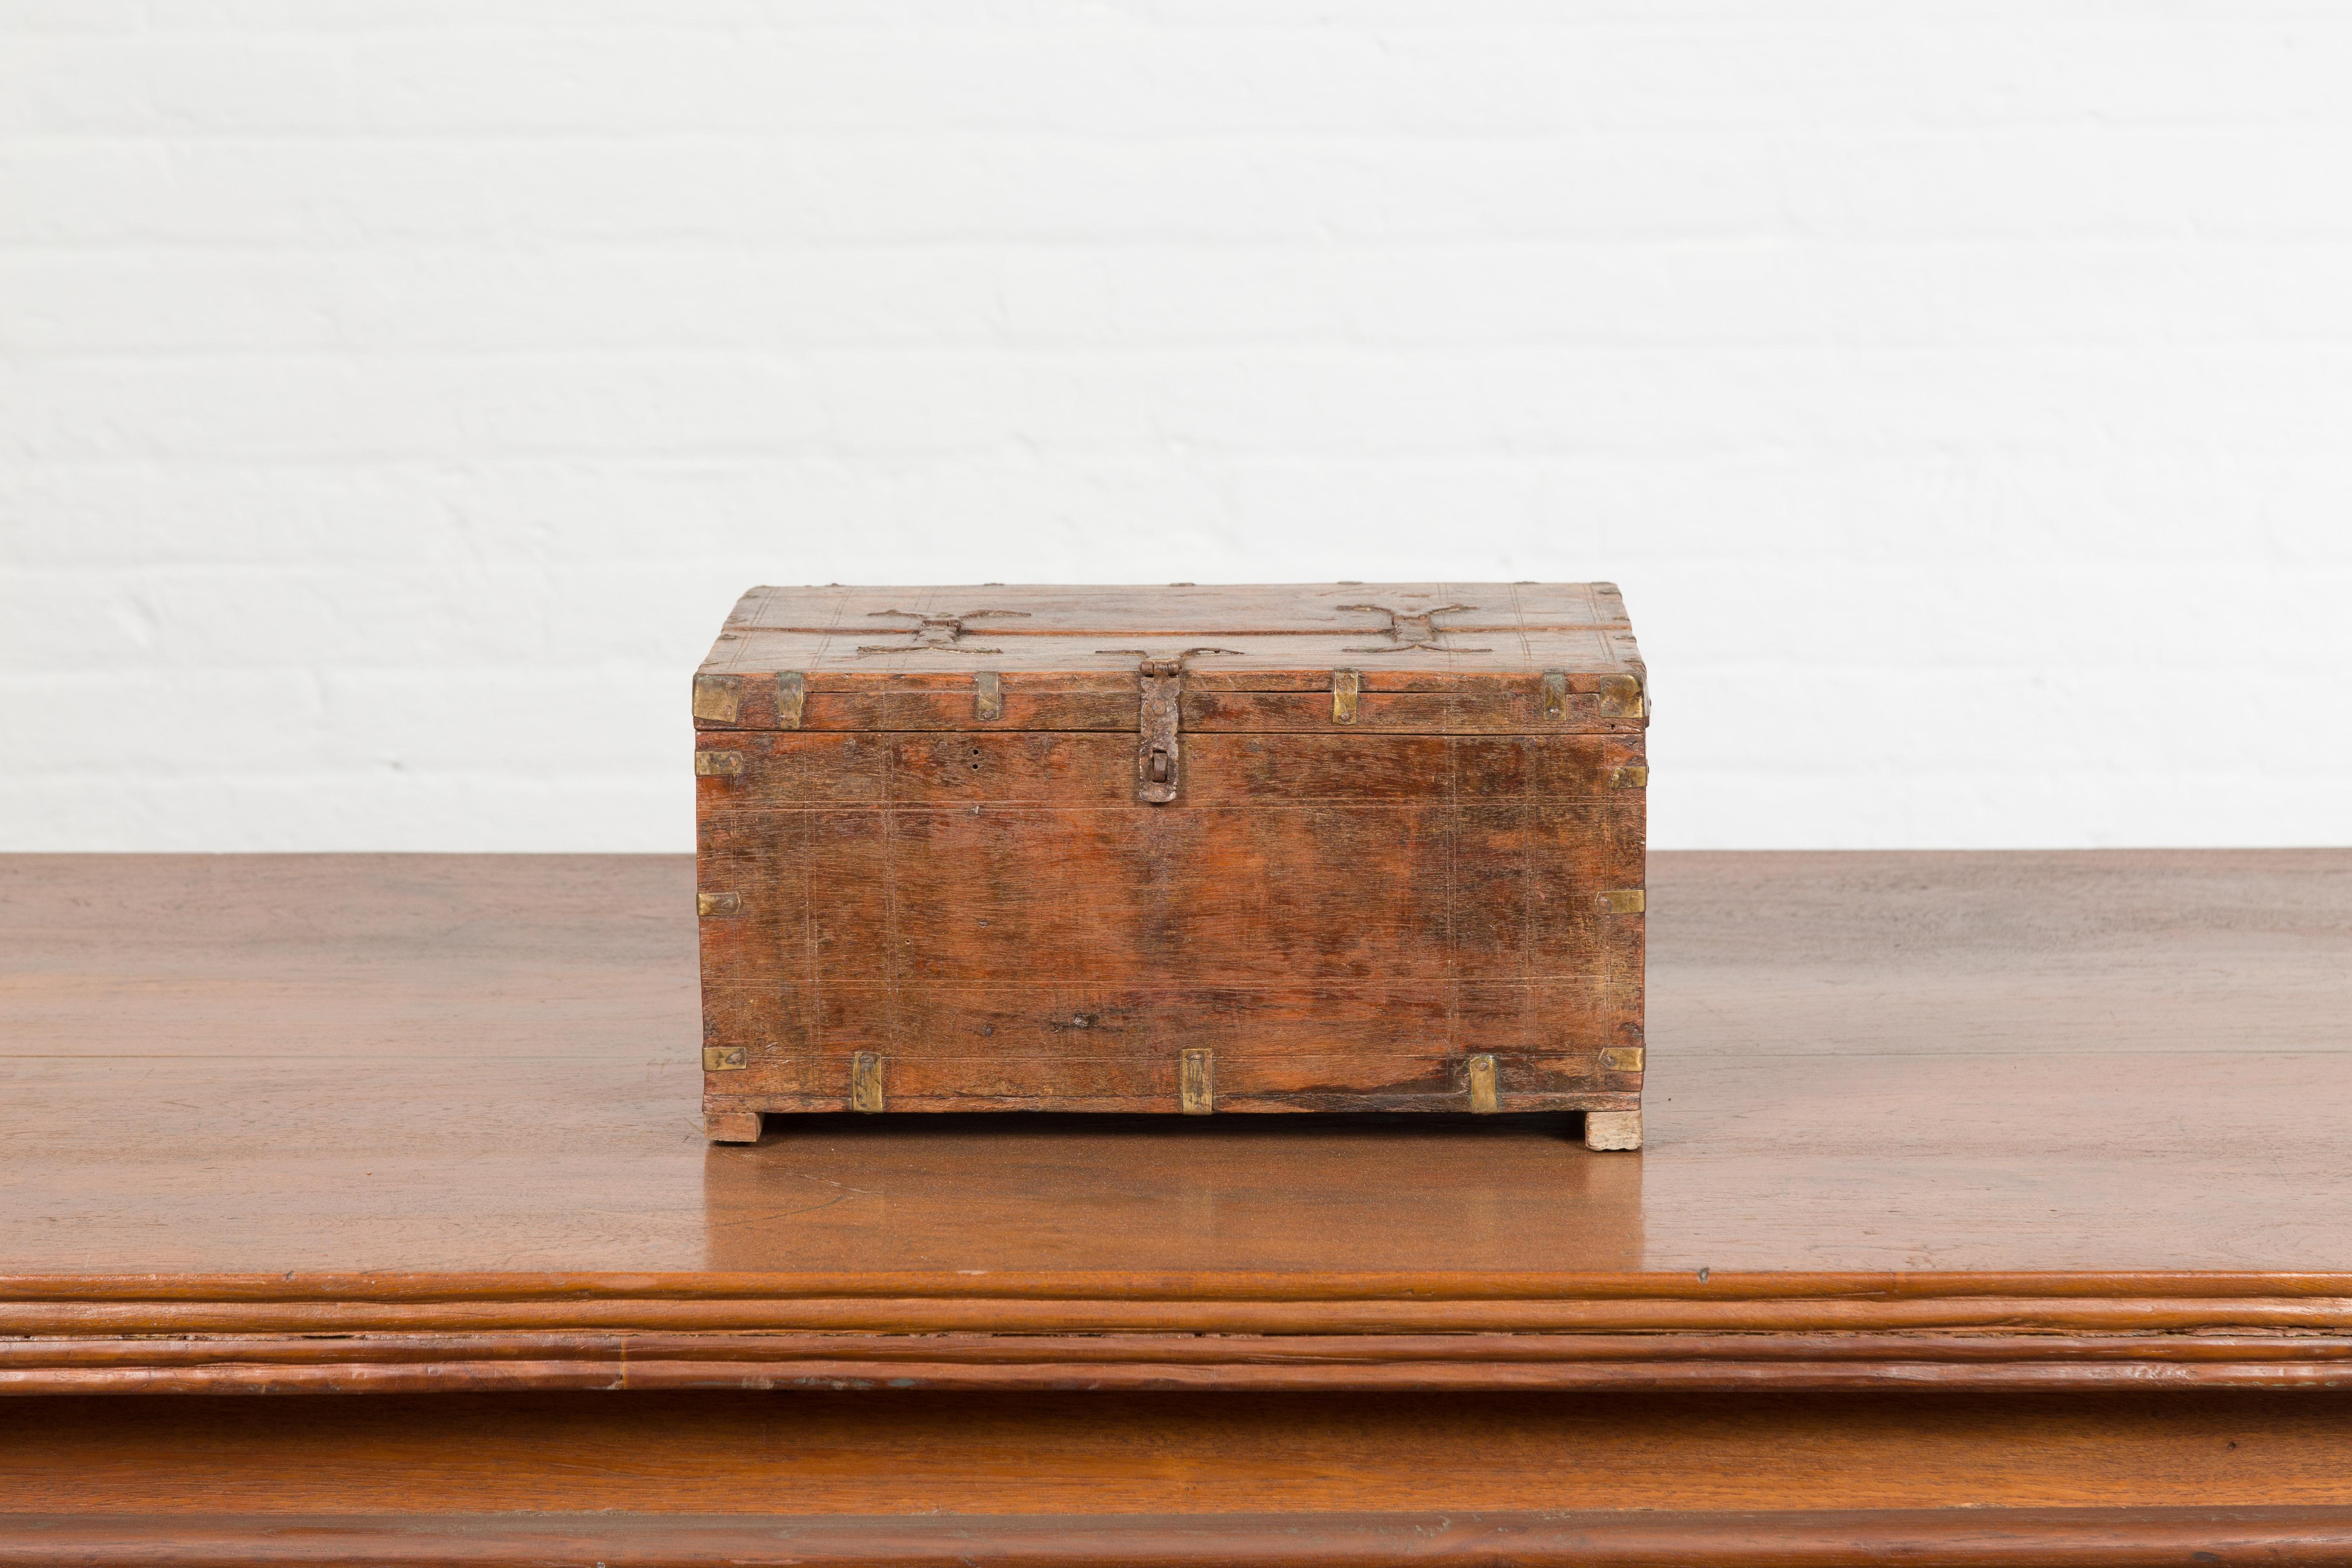 Une petite boîte indienne antique du 19ème siècle, avec des détails en laiton et un intérieur compartimenté. Créée en Inde au XIXe siècle, cette petite boîte en bois présente un couvercle rectangulaire s'ouvrant à moitié pour révéler un intérieur